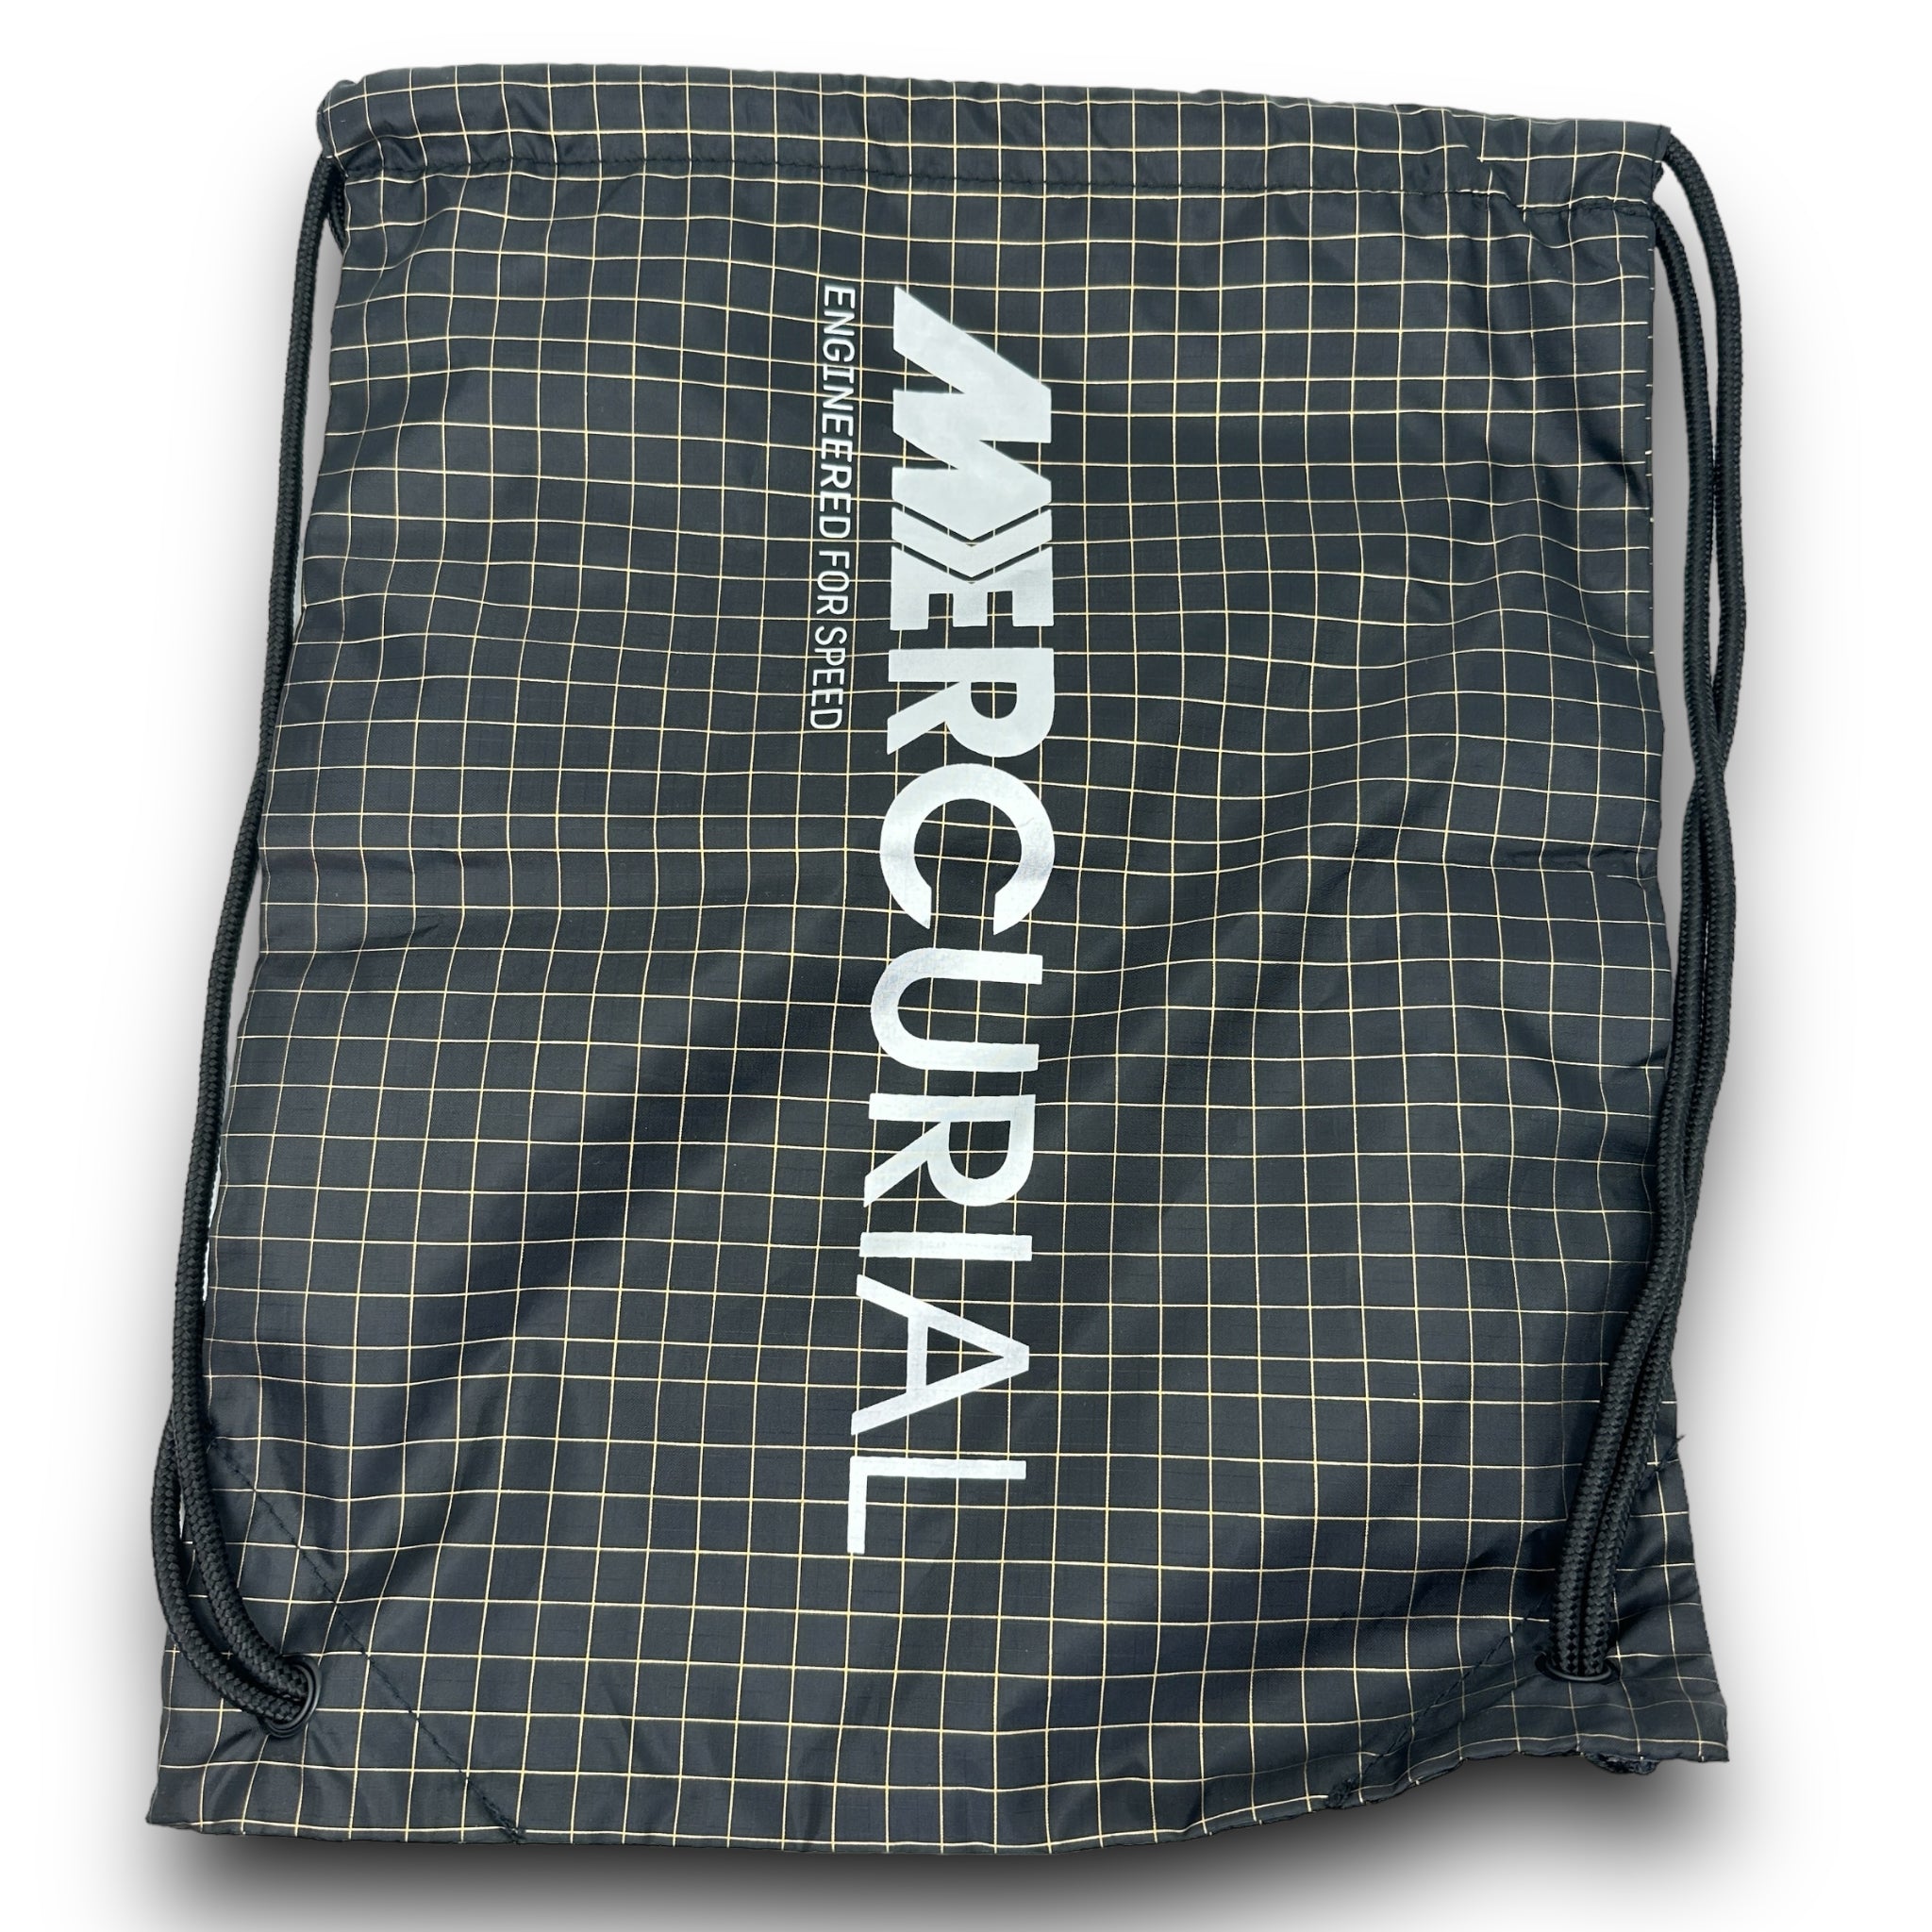 Nike Mercurial travel bag